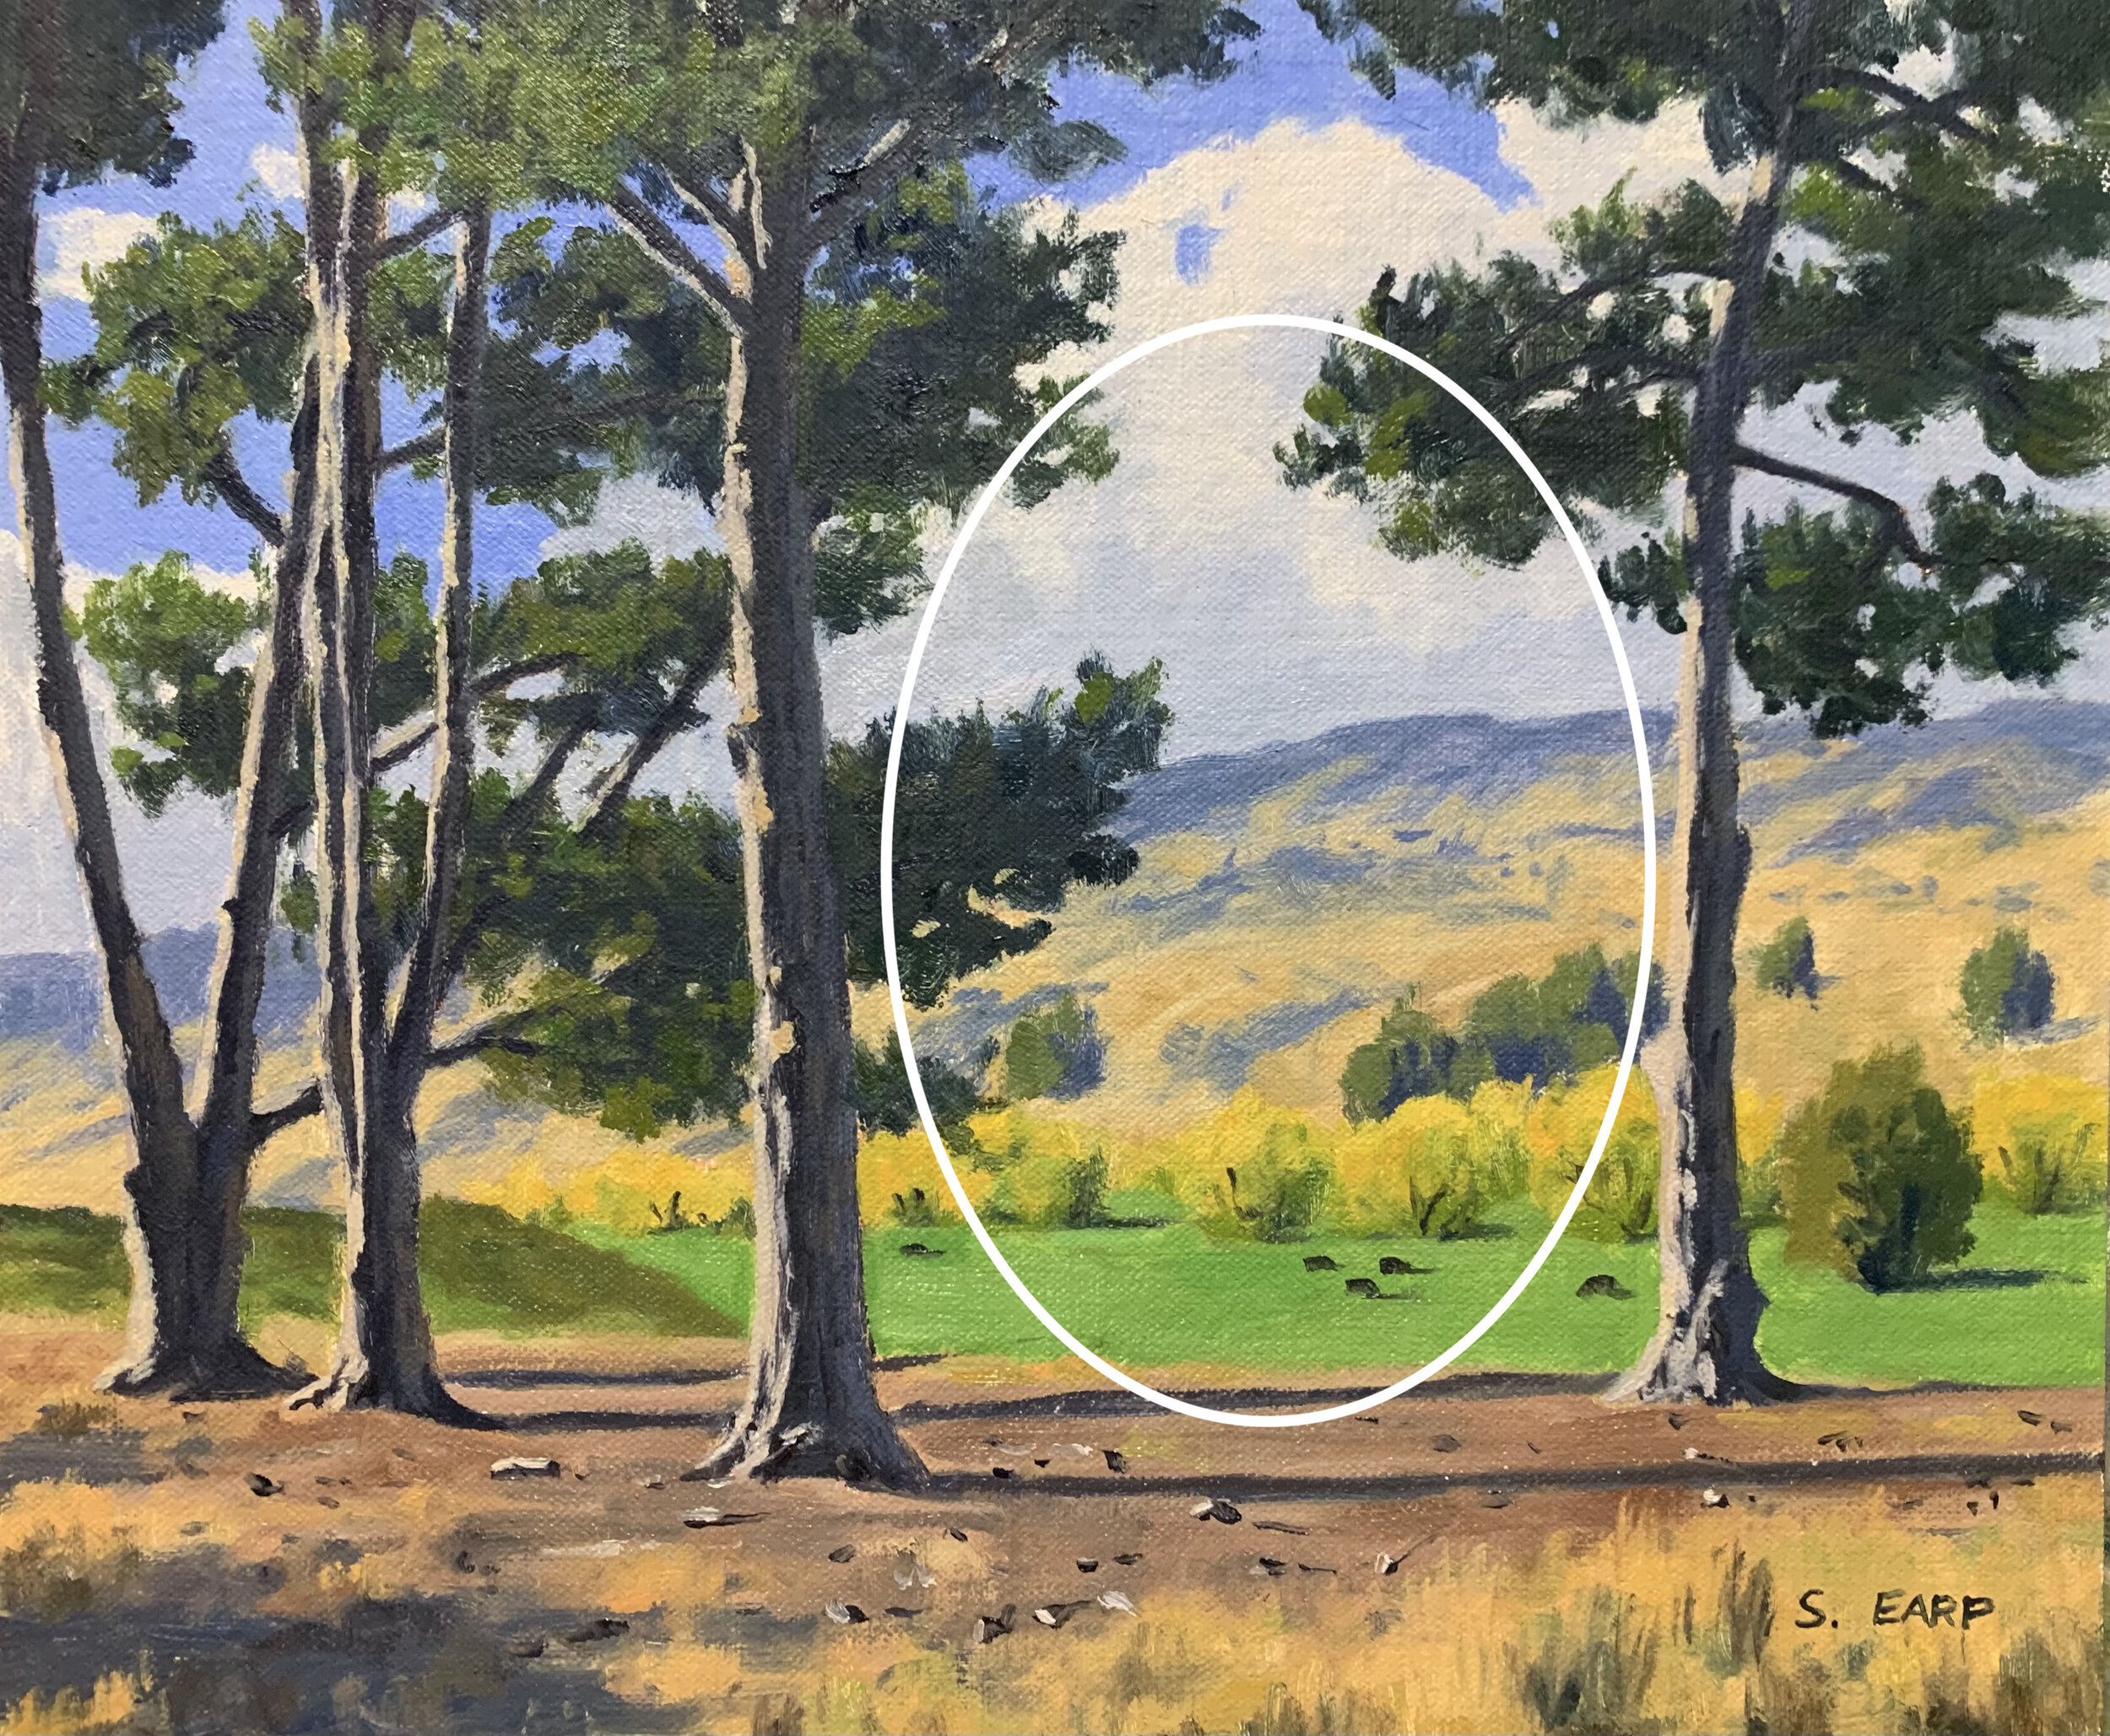 Pine Trees - Otago - oil painting - Samuel Earp copy.jpeg